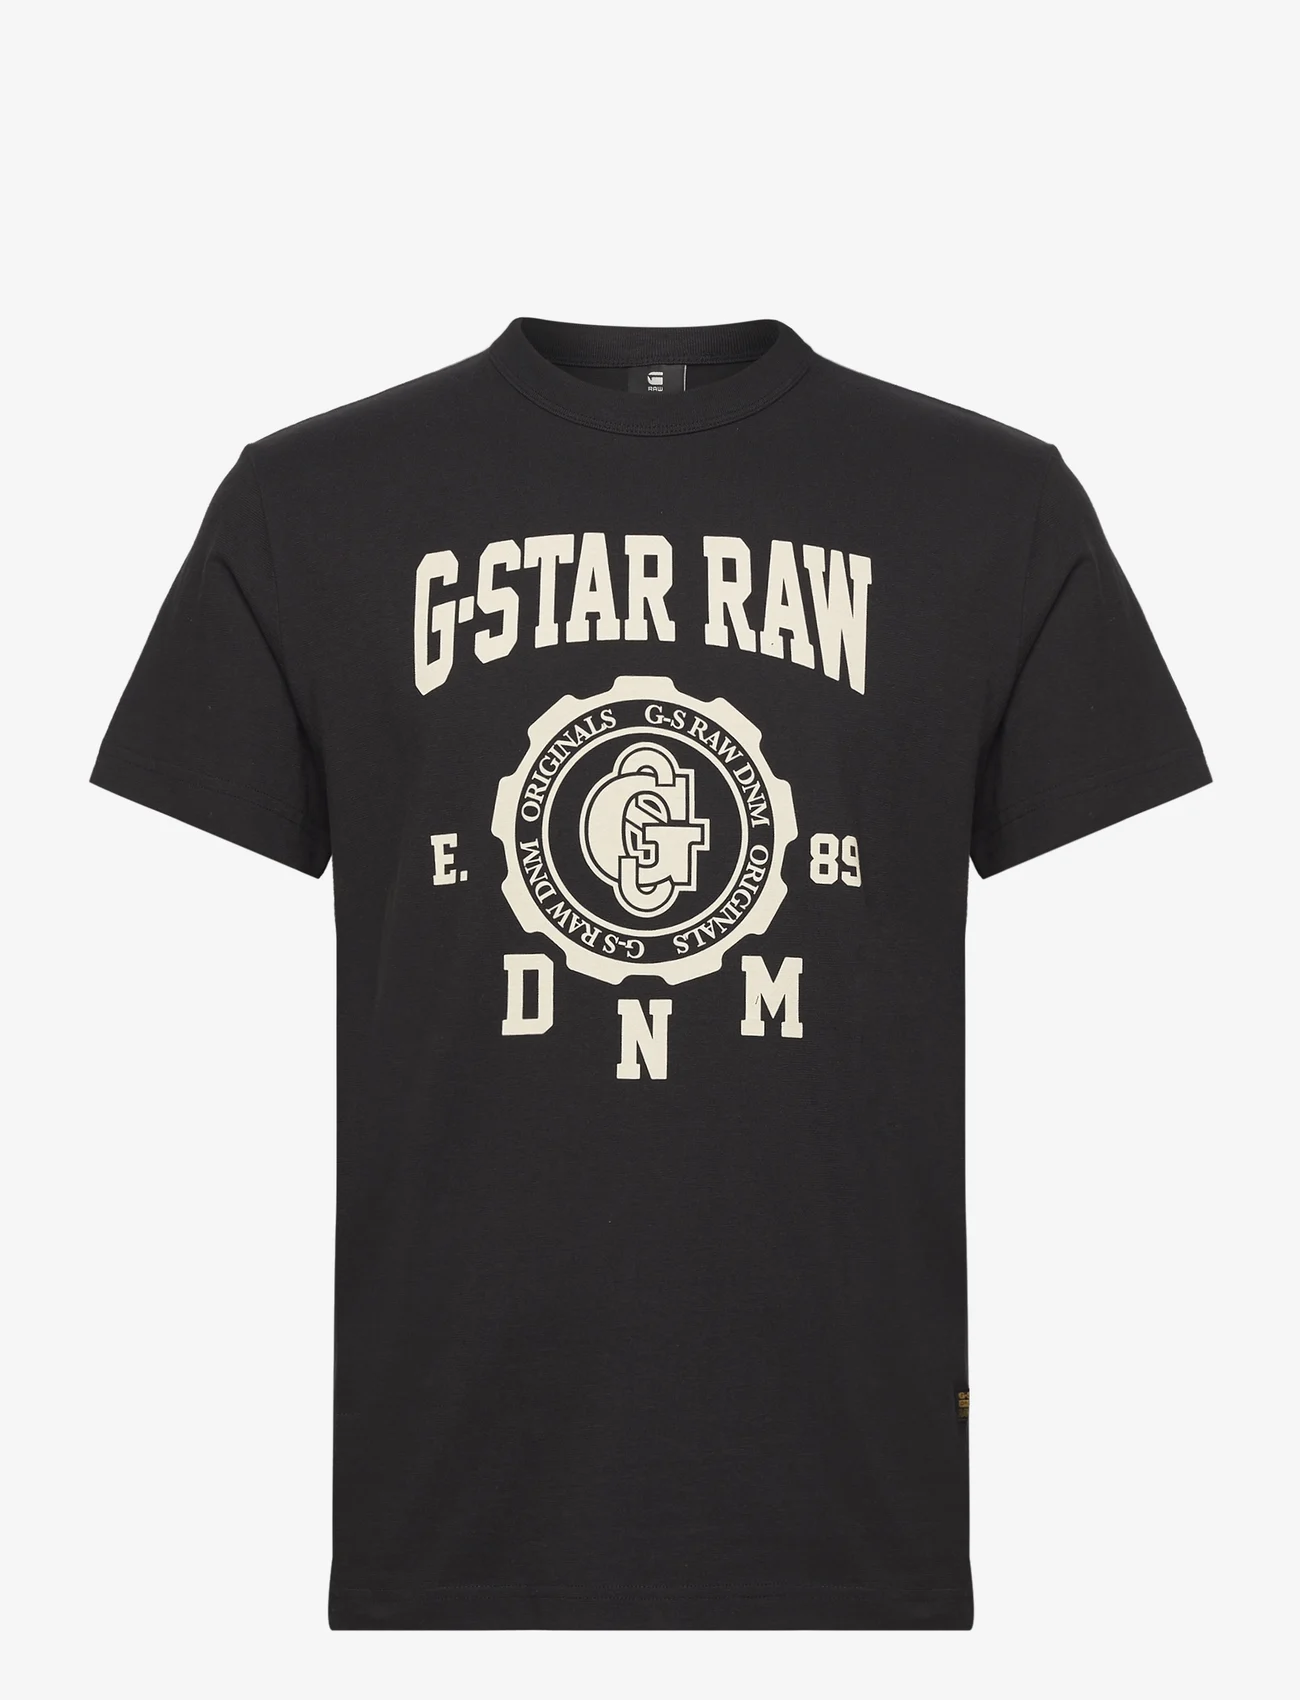 G-Star RAW - Collegic r t - t-shirts à manches courtes - dk black - 1